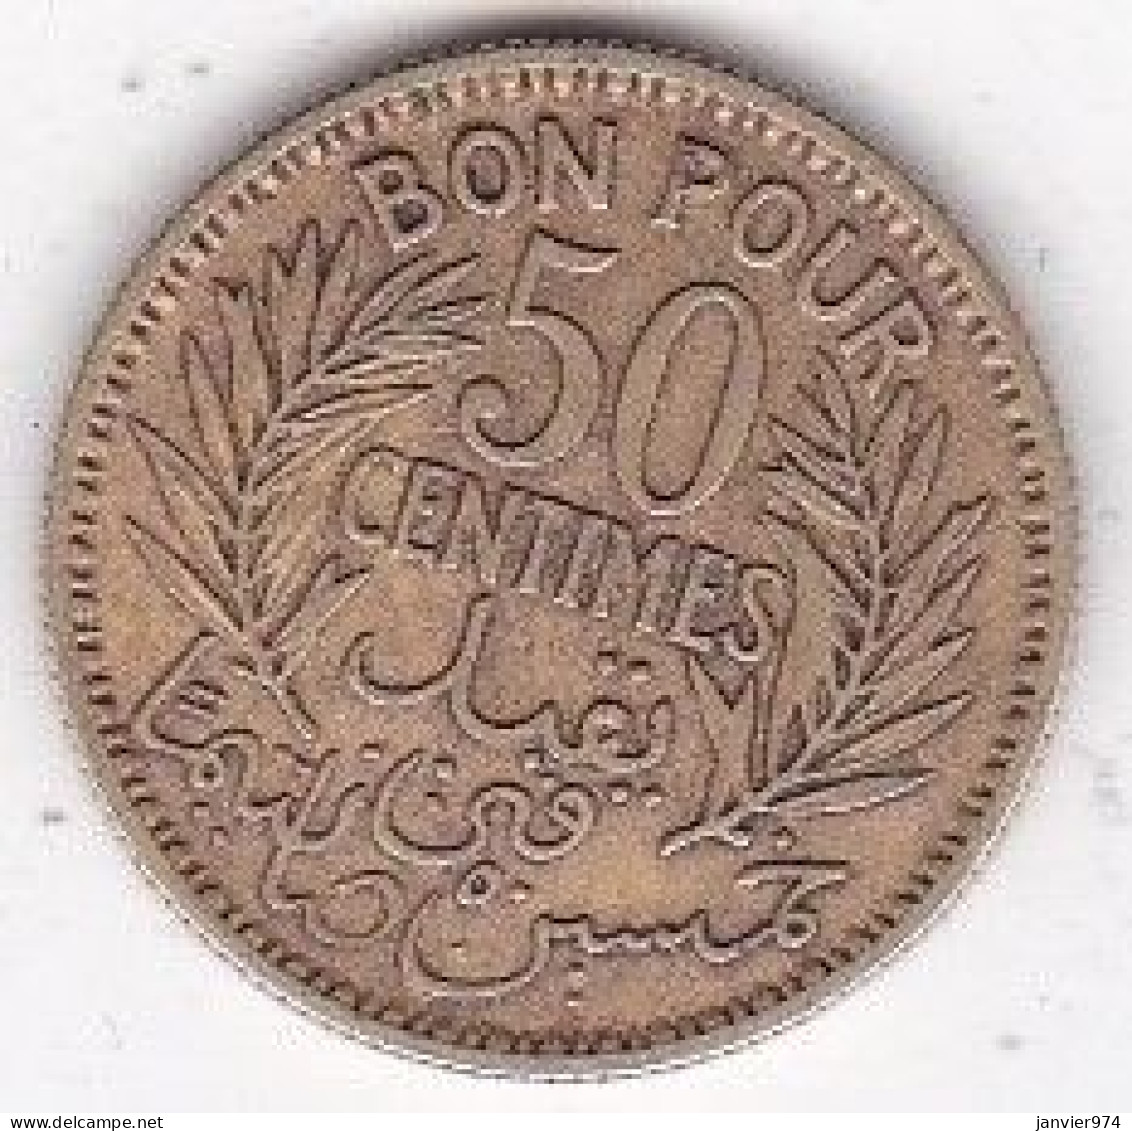 Protectorat Français Bon Pour 50 Centimes 1926 – AH 1345 En Bronze-aluminium, Lec# 183 - Túnez